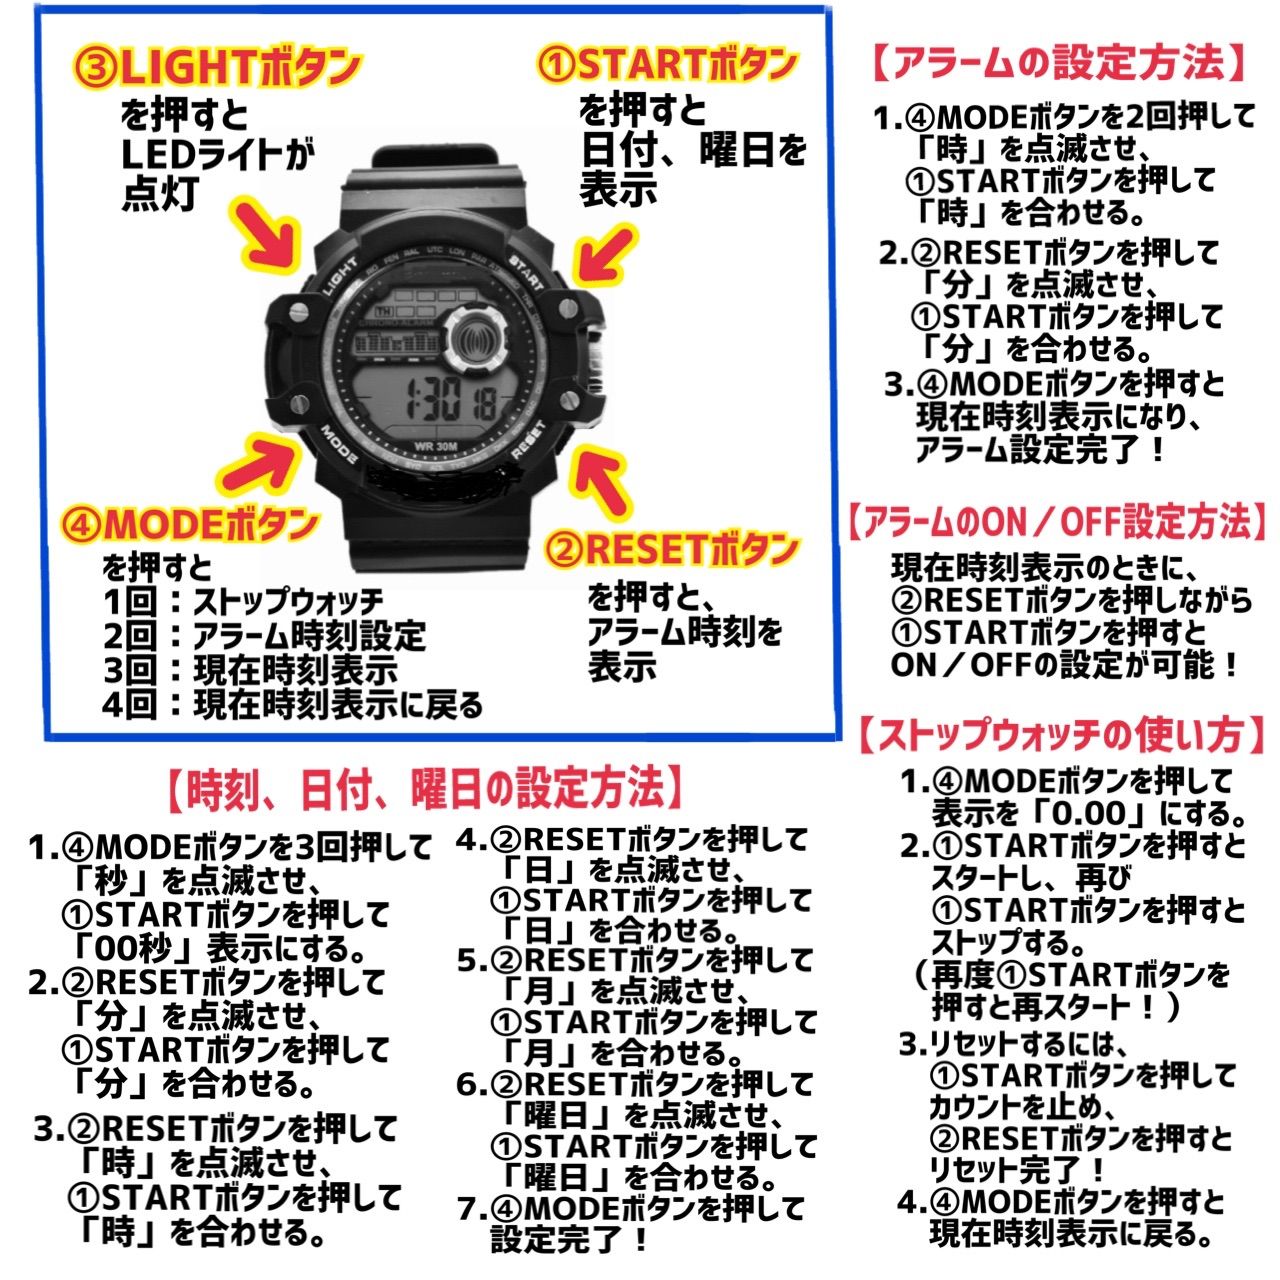 16送料無料 ＡＯＳＵＮ 腕時計デジタル多機能LEDブラック×メタルゴールド-4